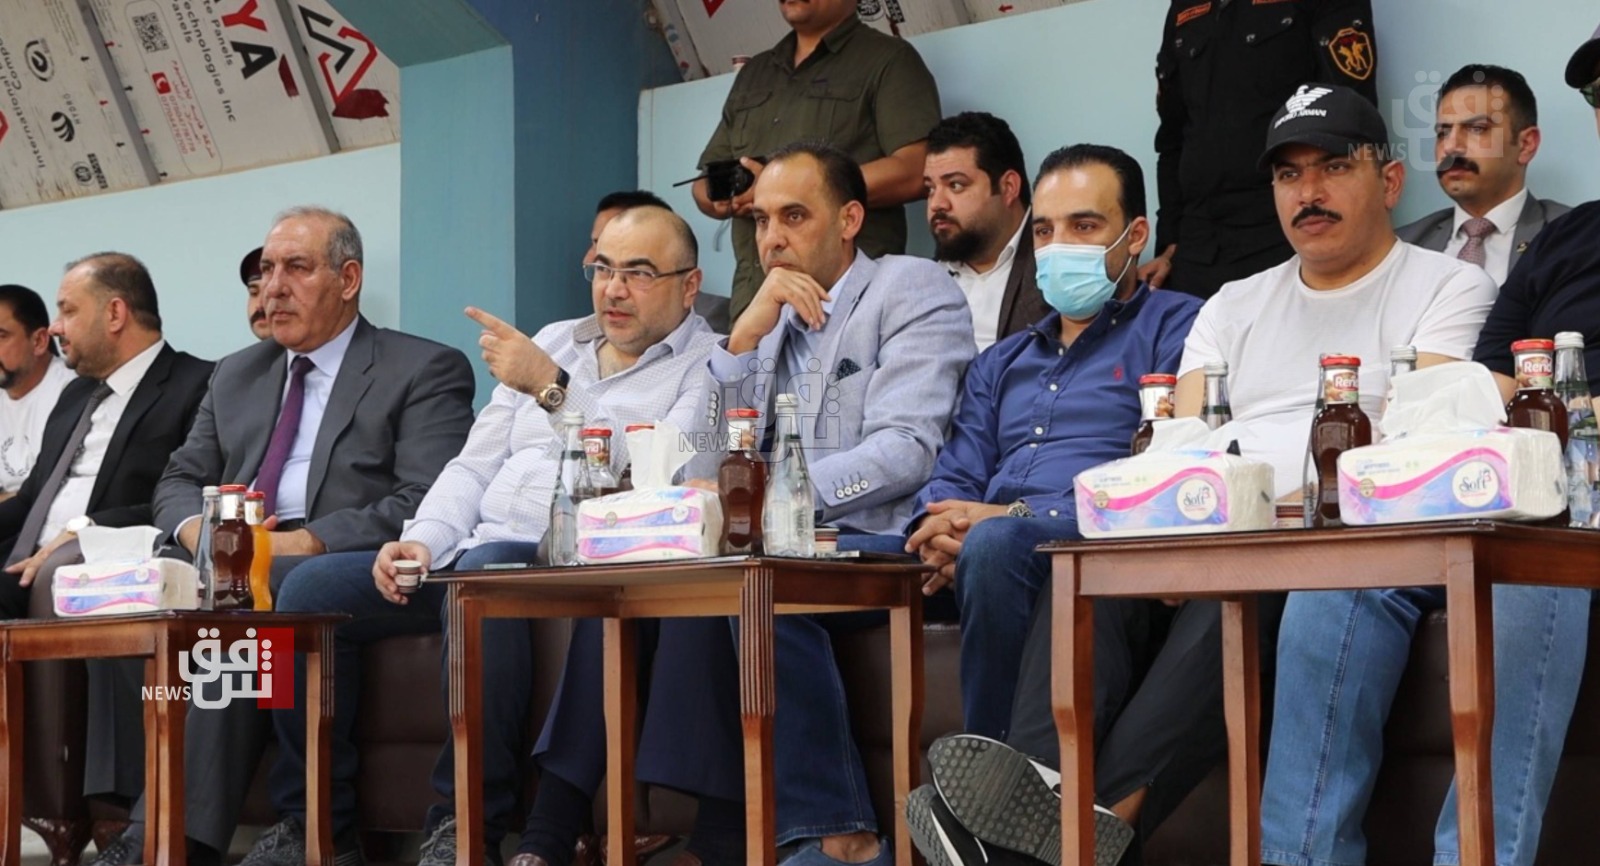 وزير الاتصالات العراقي يعدّ بـ"شعرتين ضوئيتين لكل منزل"